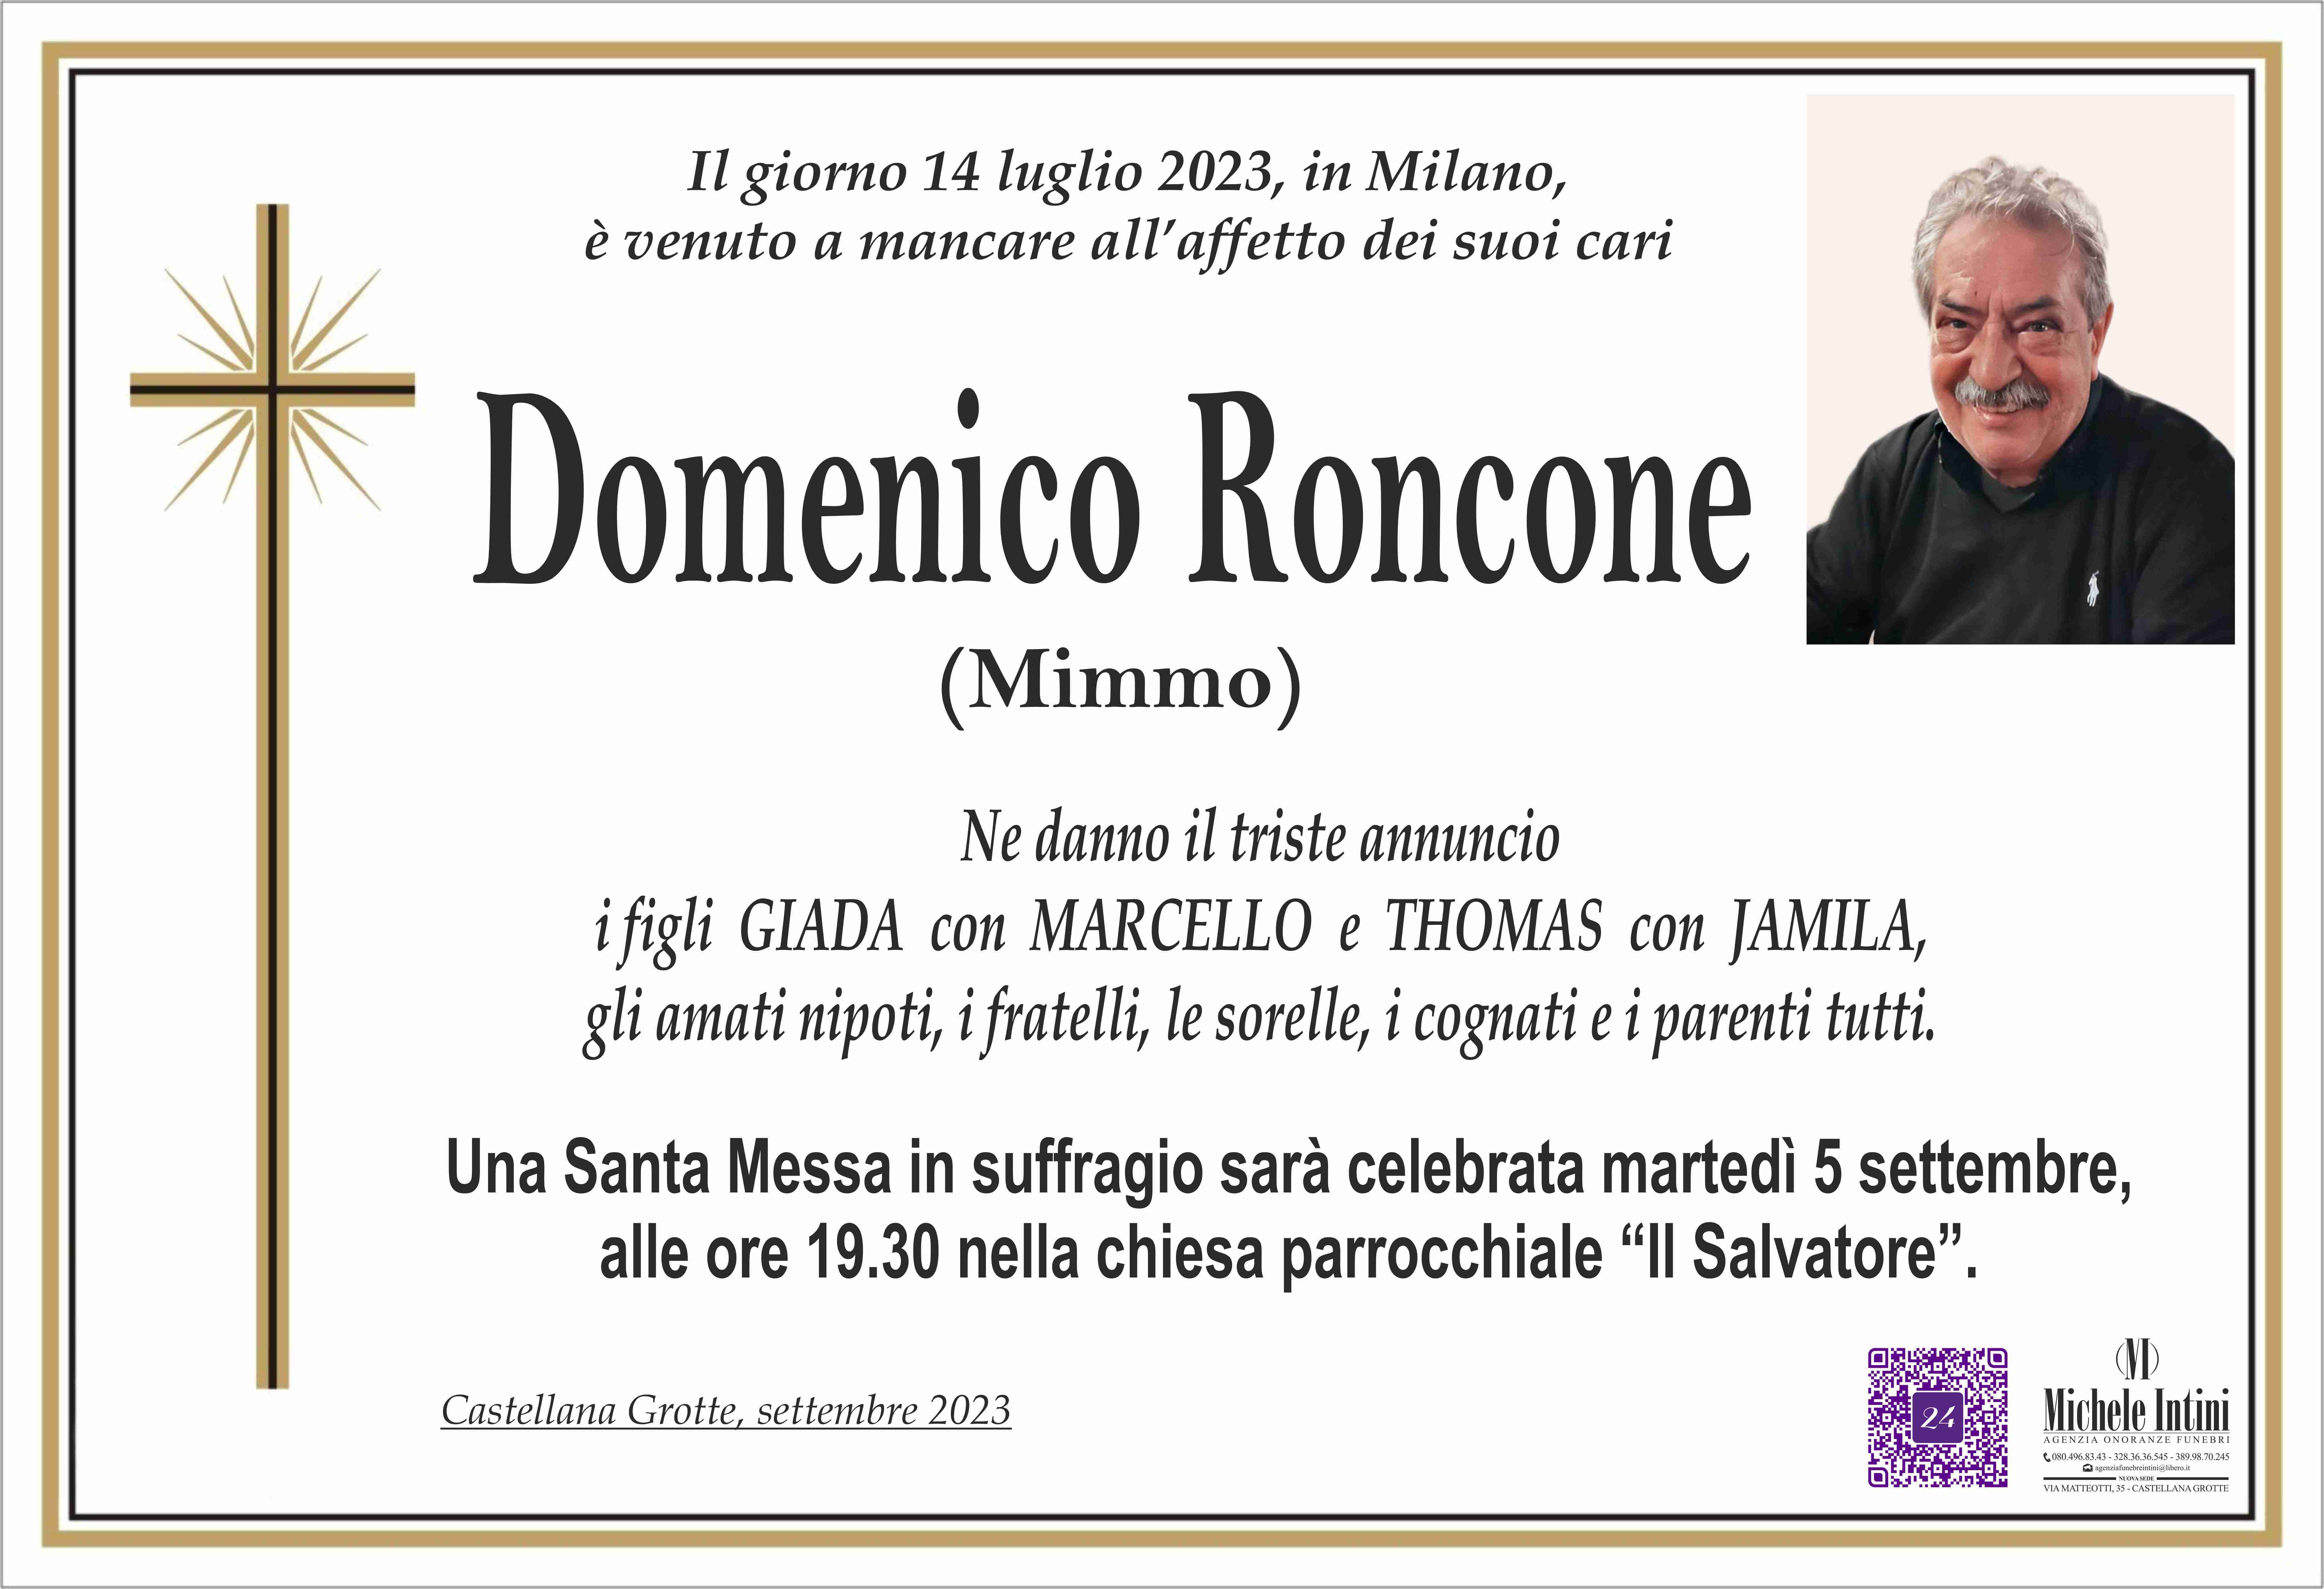 Domenico Roncone